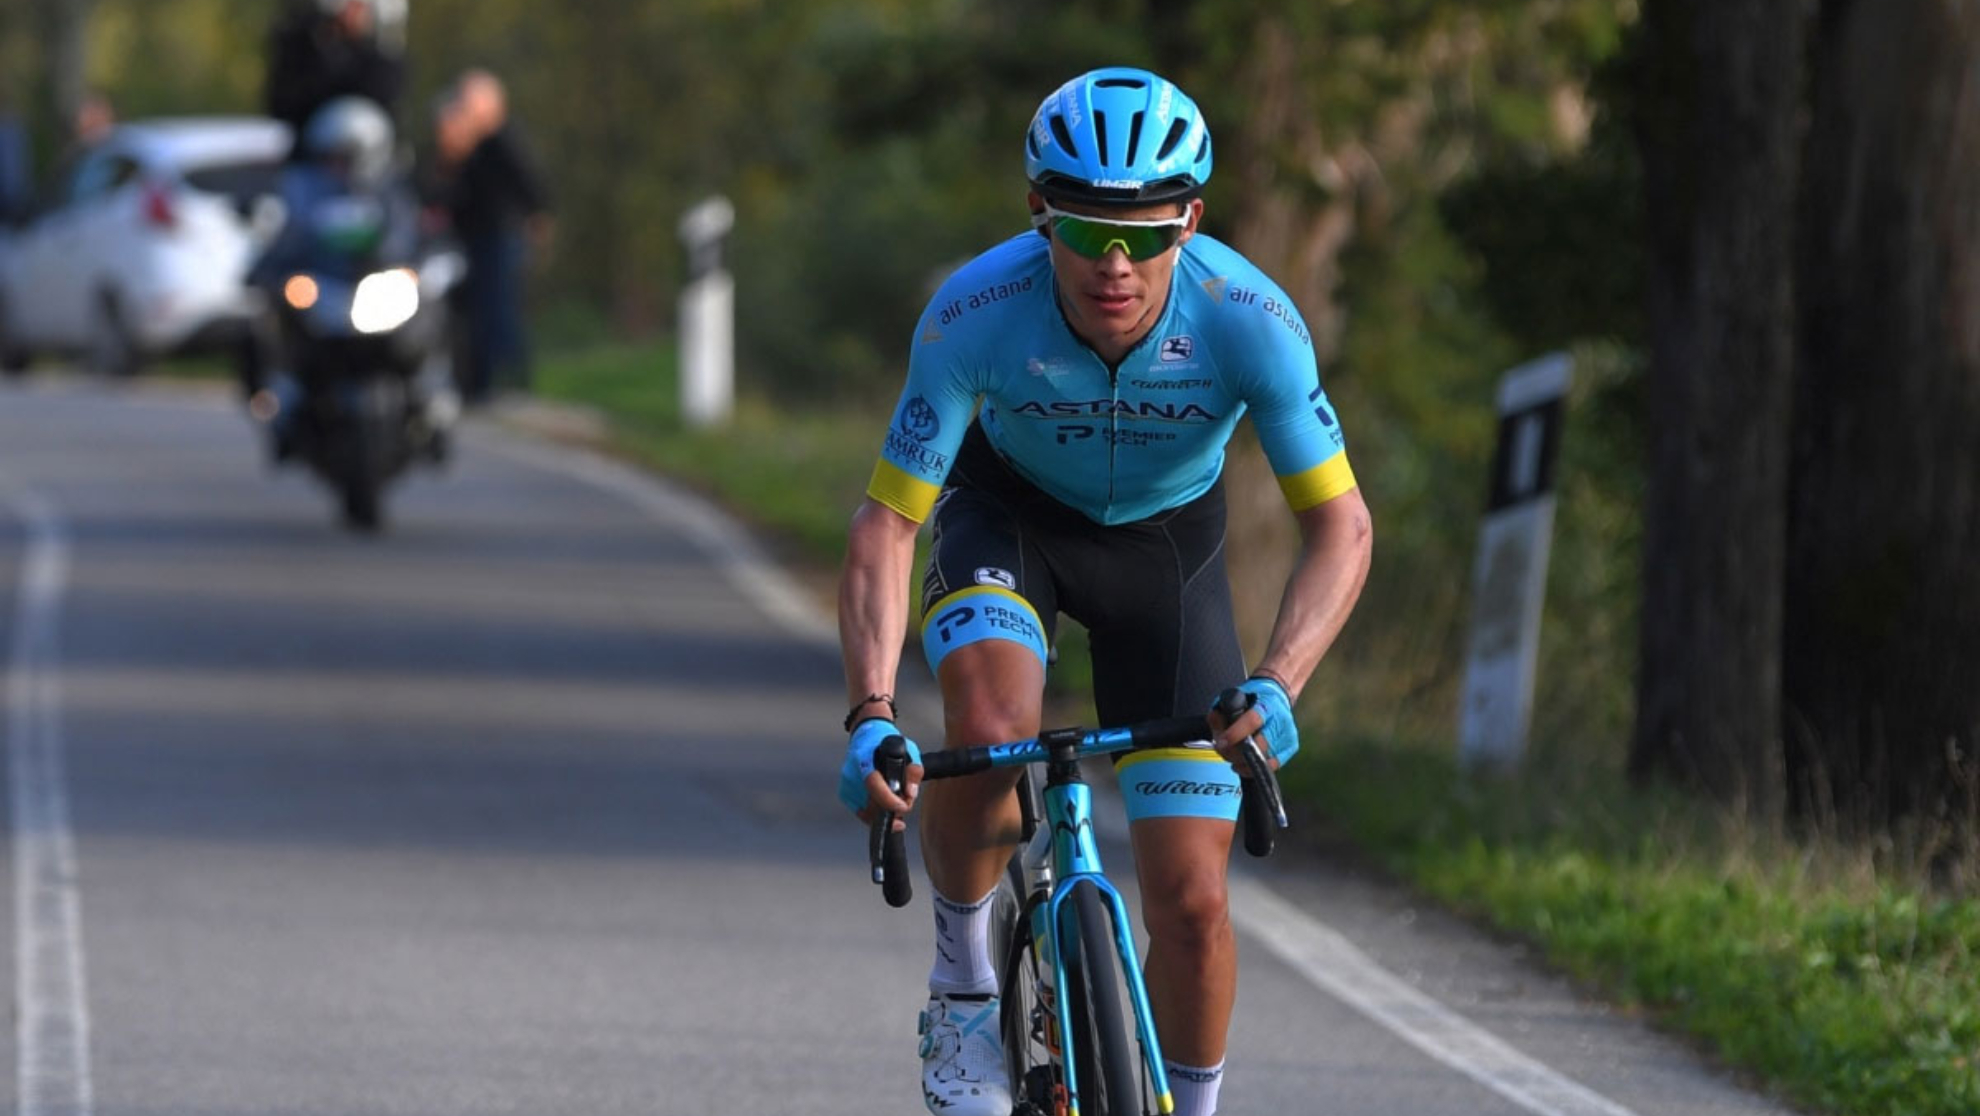 In bicicletta oggi: la possibile disputa tra Miguel Ángel López e Vincenzo Níbali per la guida dell’Astana al Giro d’Italia